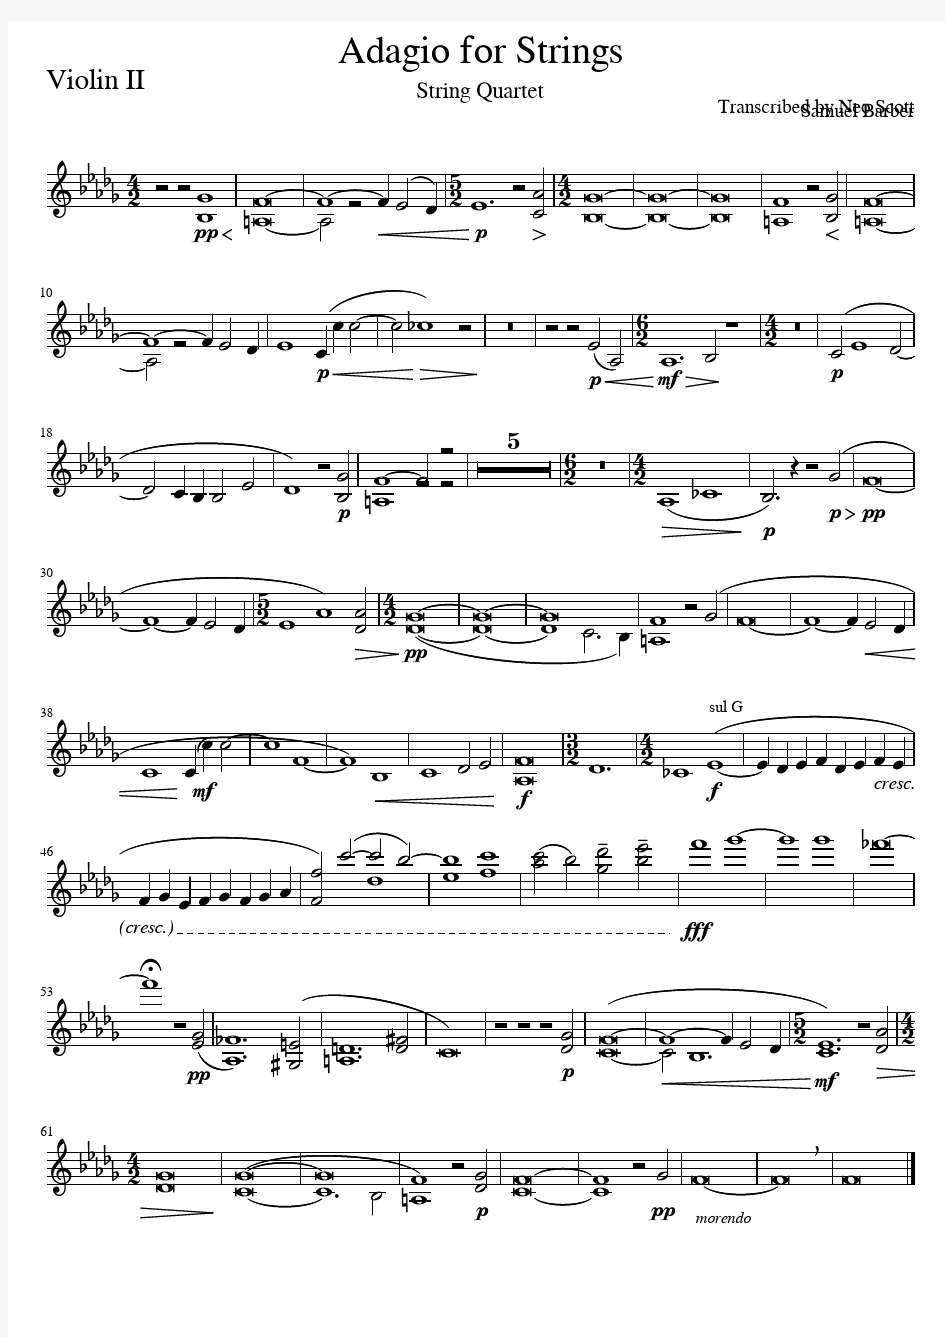 赛谬尔·巴伯《弦乐柔板》四重奏总谱VIO2